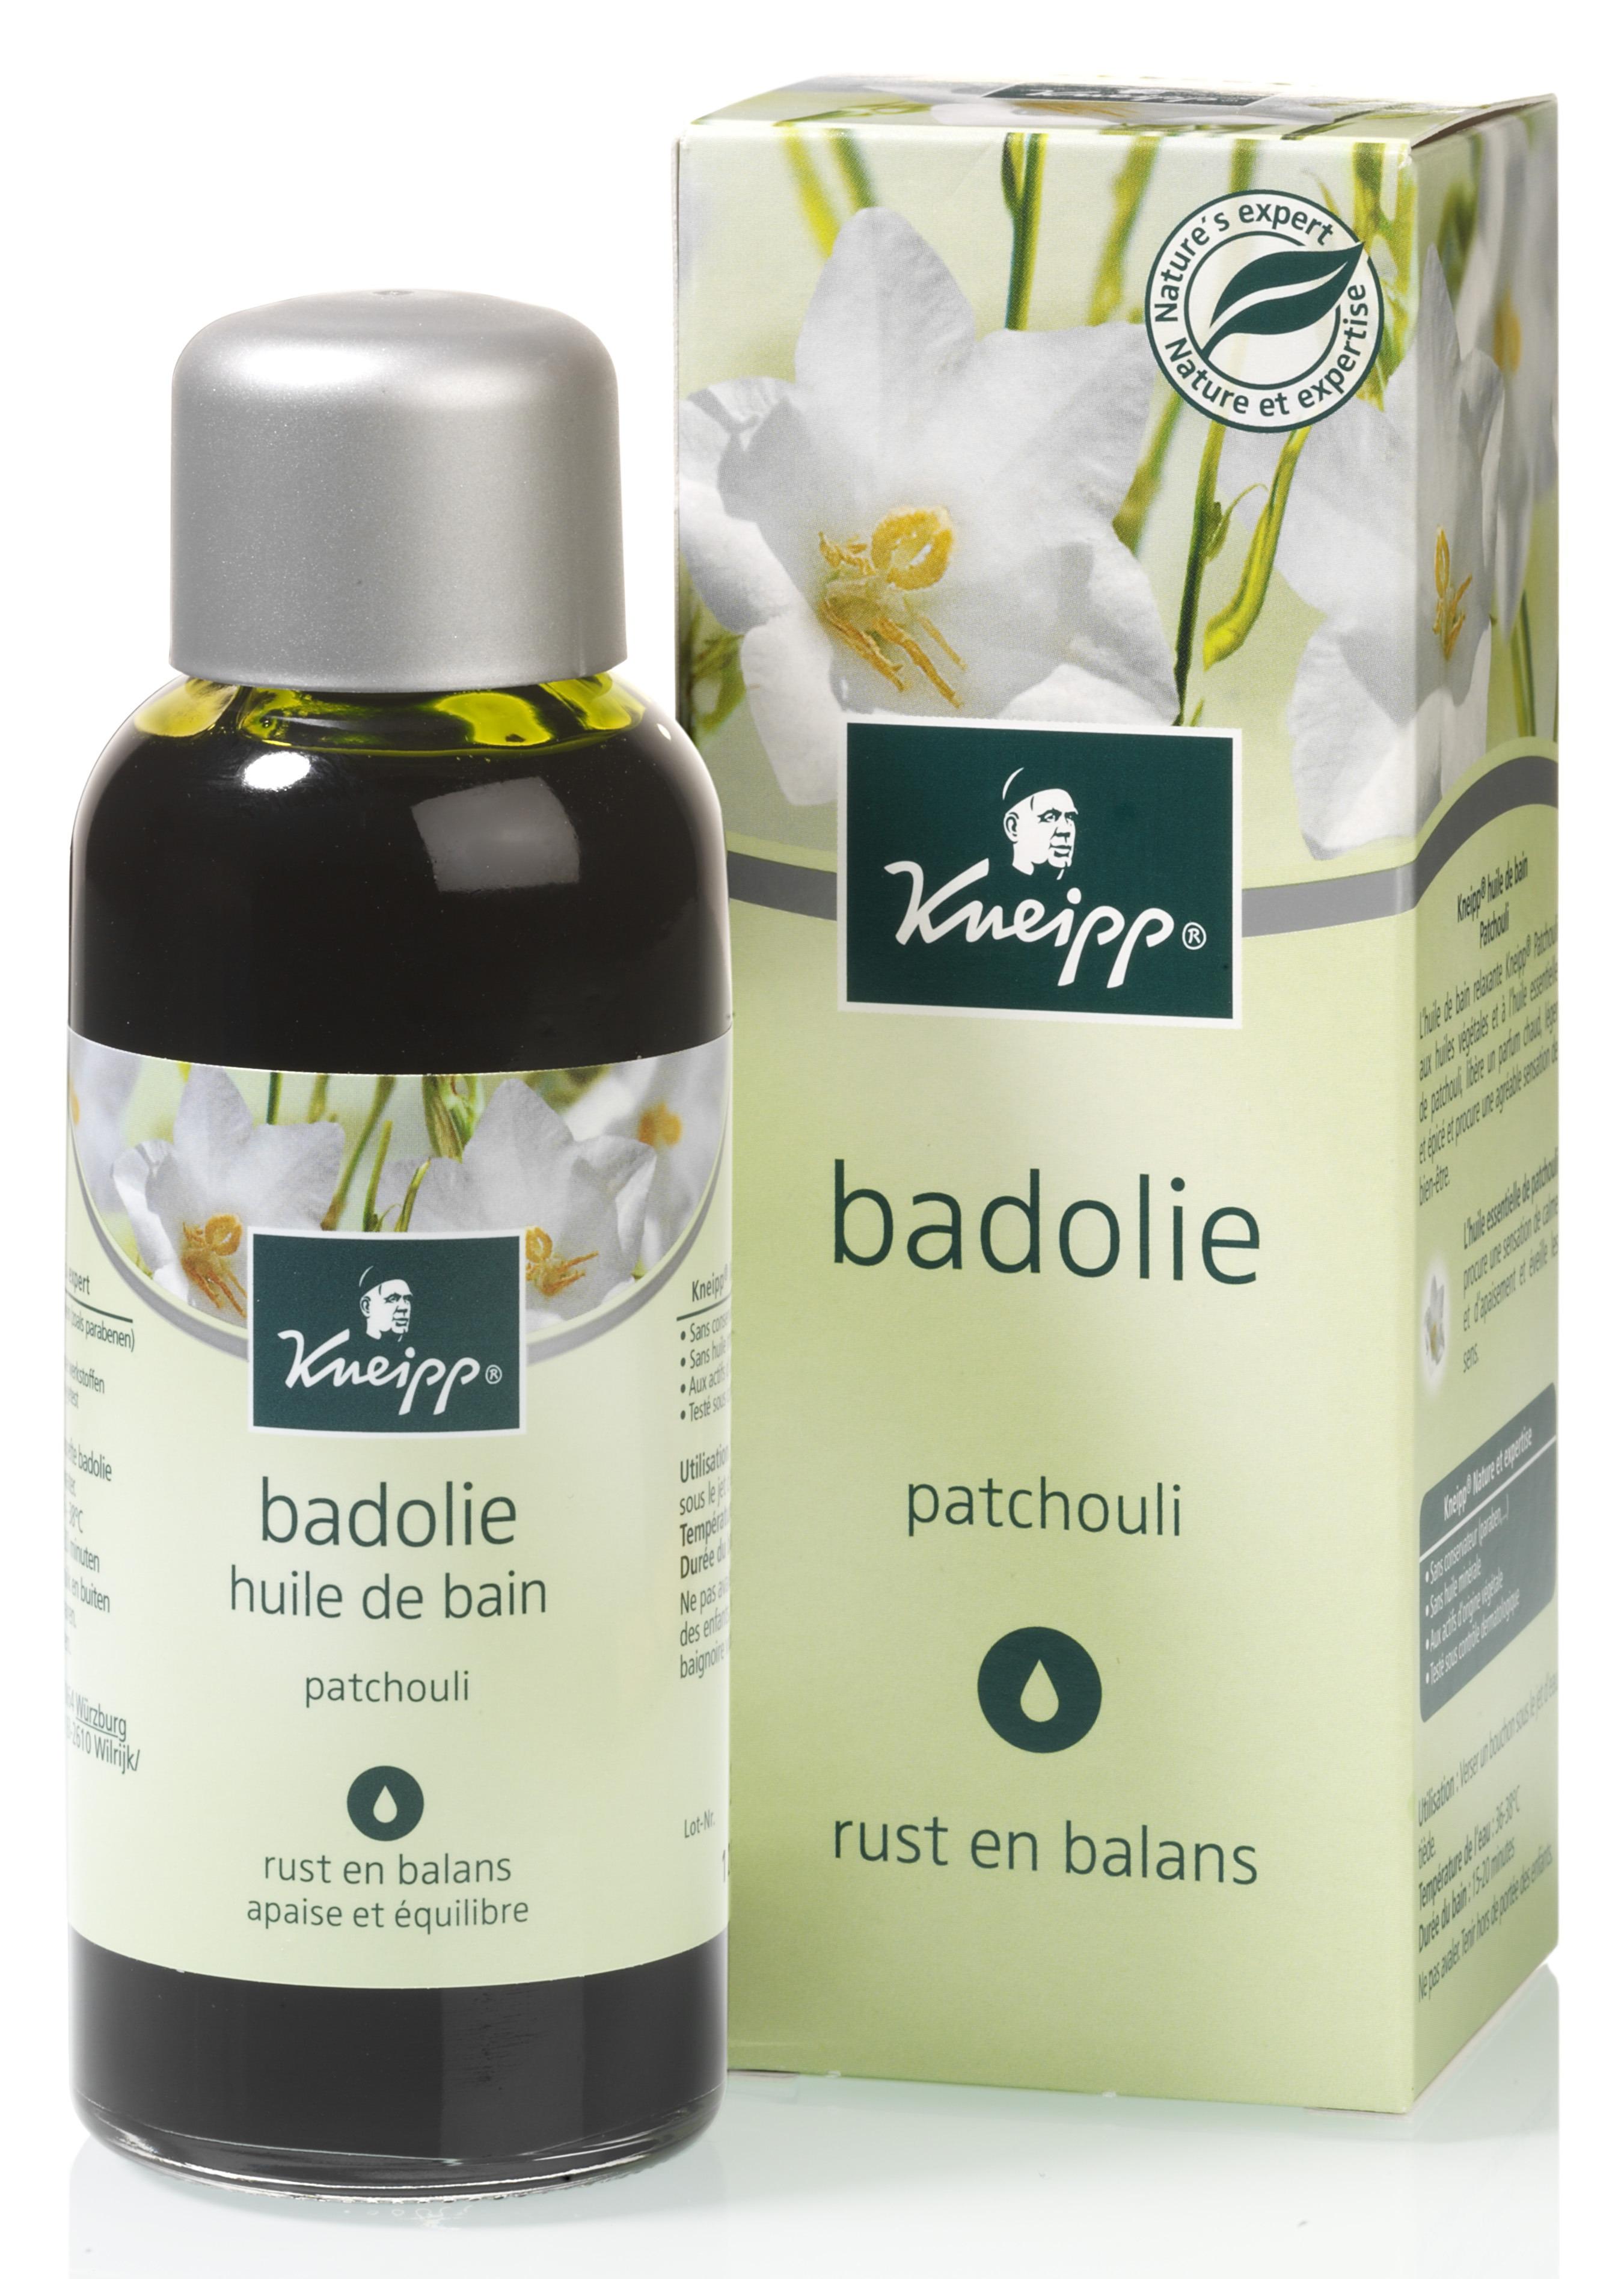 De ontspannende Kneipp Badolie Patchouli bevat natuurlijke etherische Patchouli-olie voor een heerlijk rustig gevoel. Beleef de warme, zachte, zoete en licht kruidige geur en ervaar dat lichaam en geest weer in balans komen.